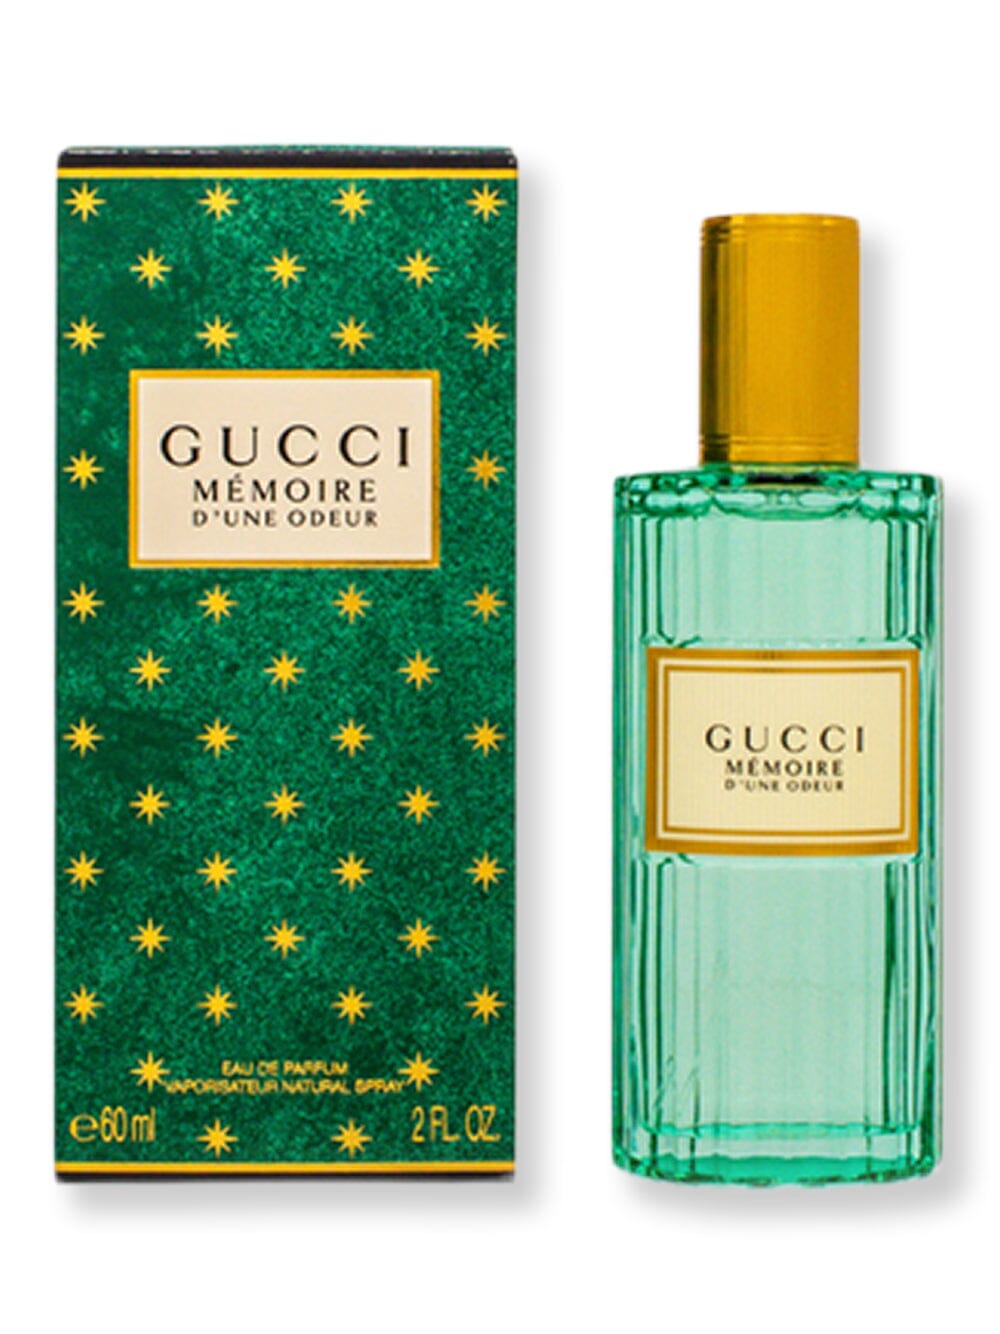 Gucci Gucci Memoire D'une Odeur EDP Spray 2 oz60 ml Perfume 